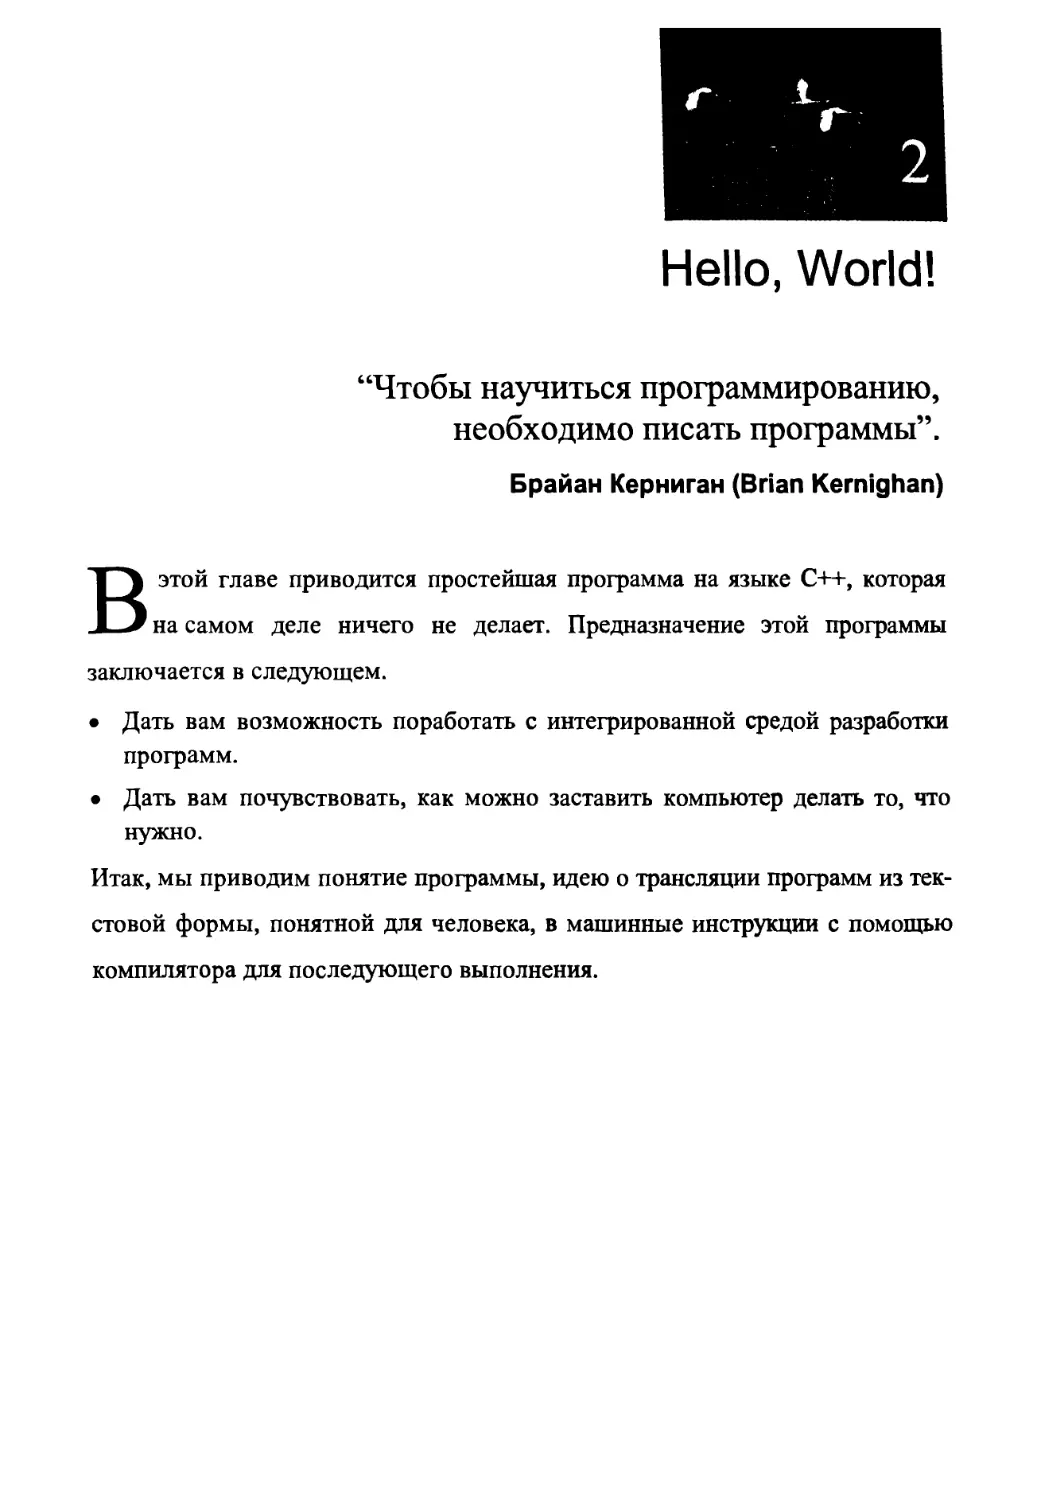 Глава 2. Hello, World!